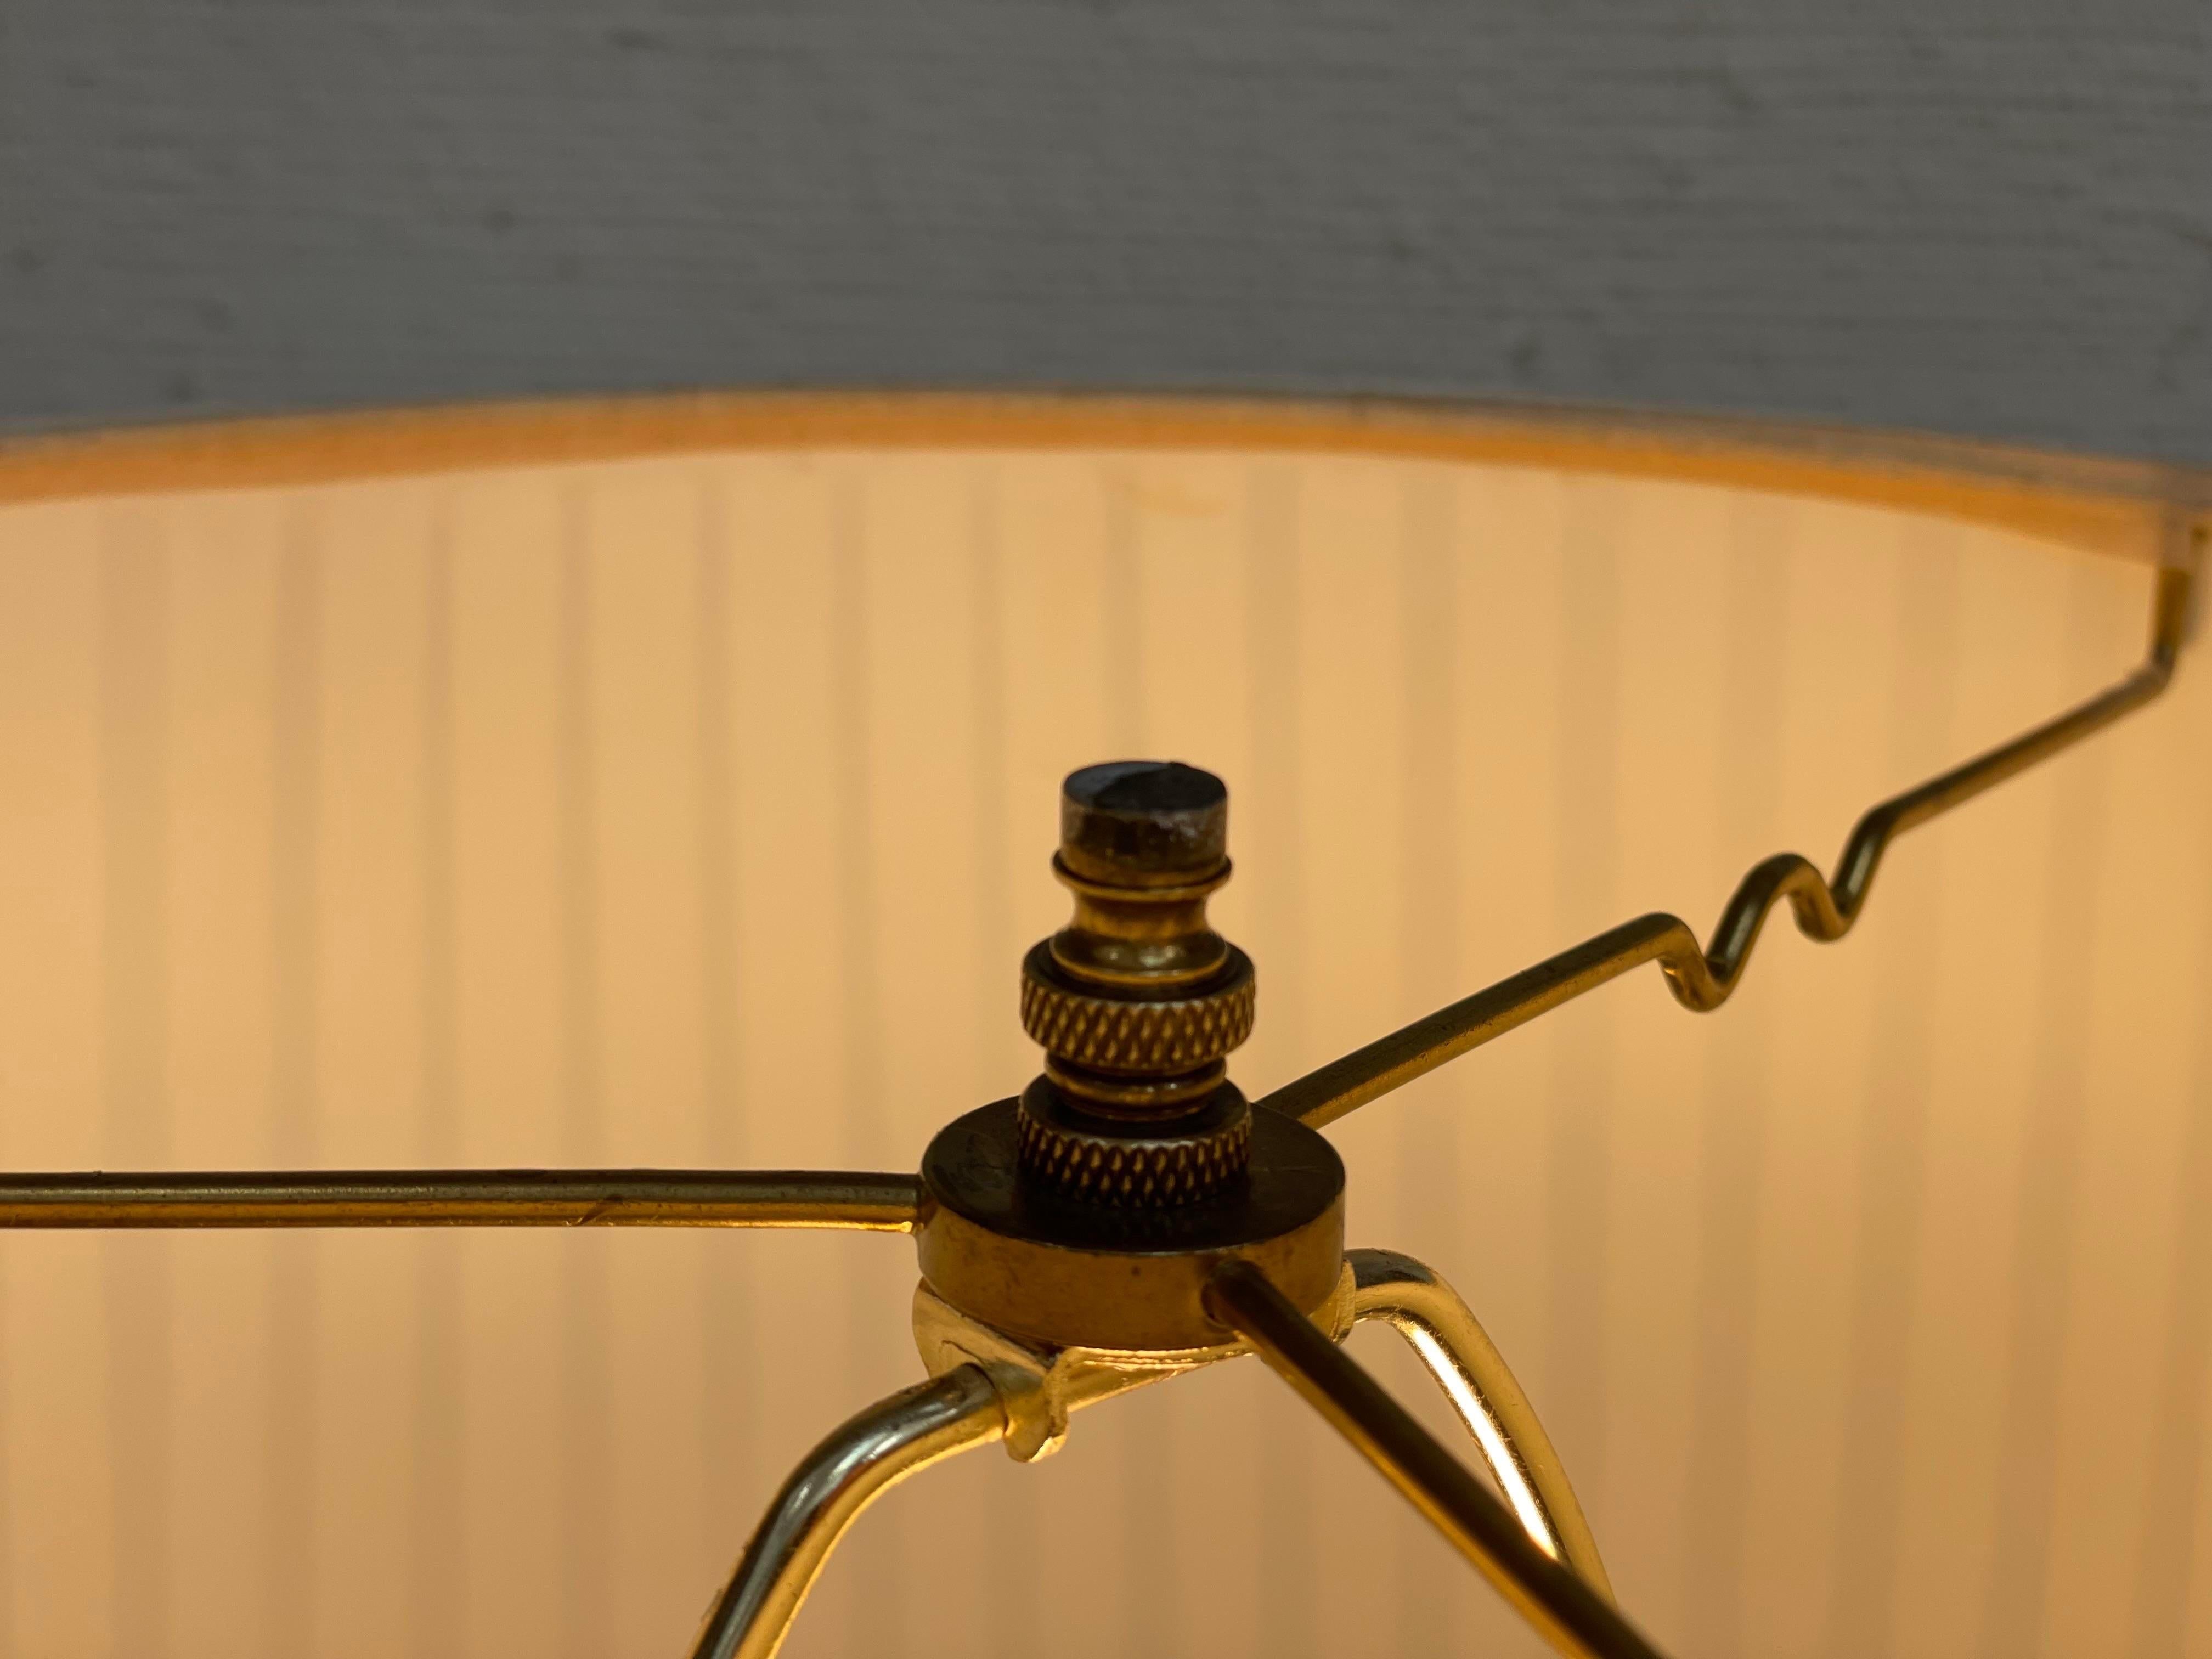 Un exquis lampadaire ancien de style régence français. Métal doré avec une patine parfaite sur de superbes détails moulés.